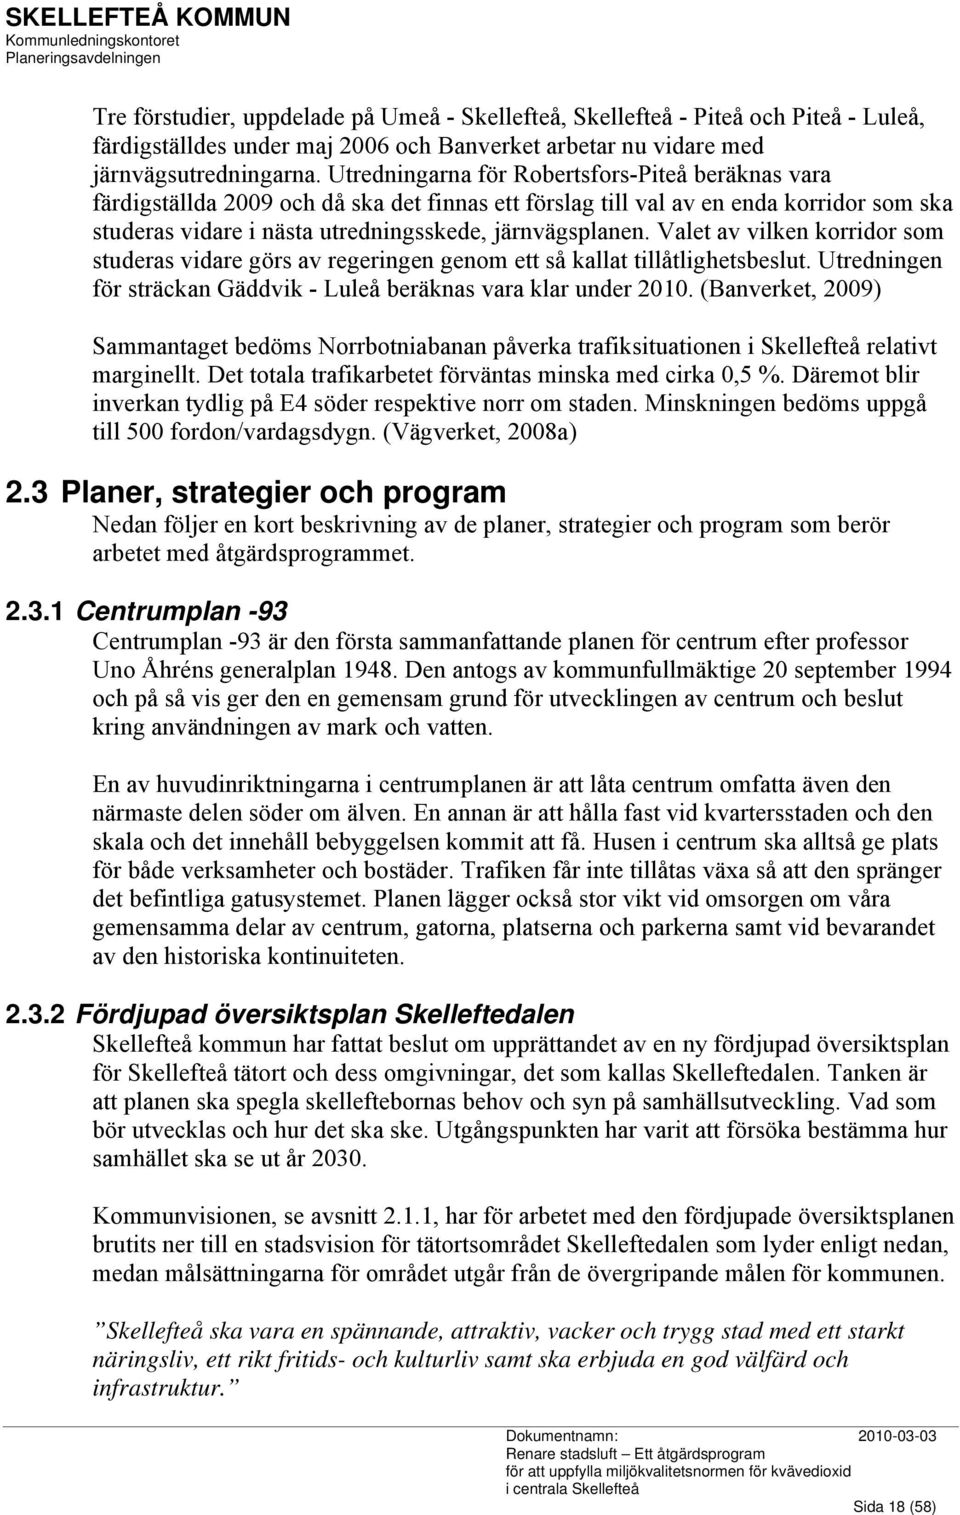 Valet av vilken korridor som studeras vidare görs av regeringen genom ett så kallat tillåtlighetsbeslut. Utredningen för sträckan Gäddvik - Luleå beräknas vara klar under 2010.